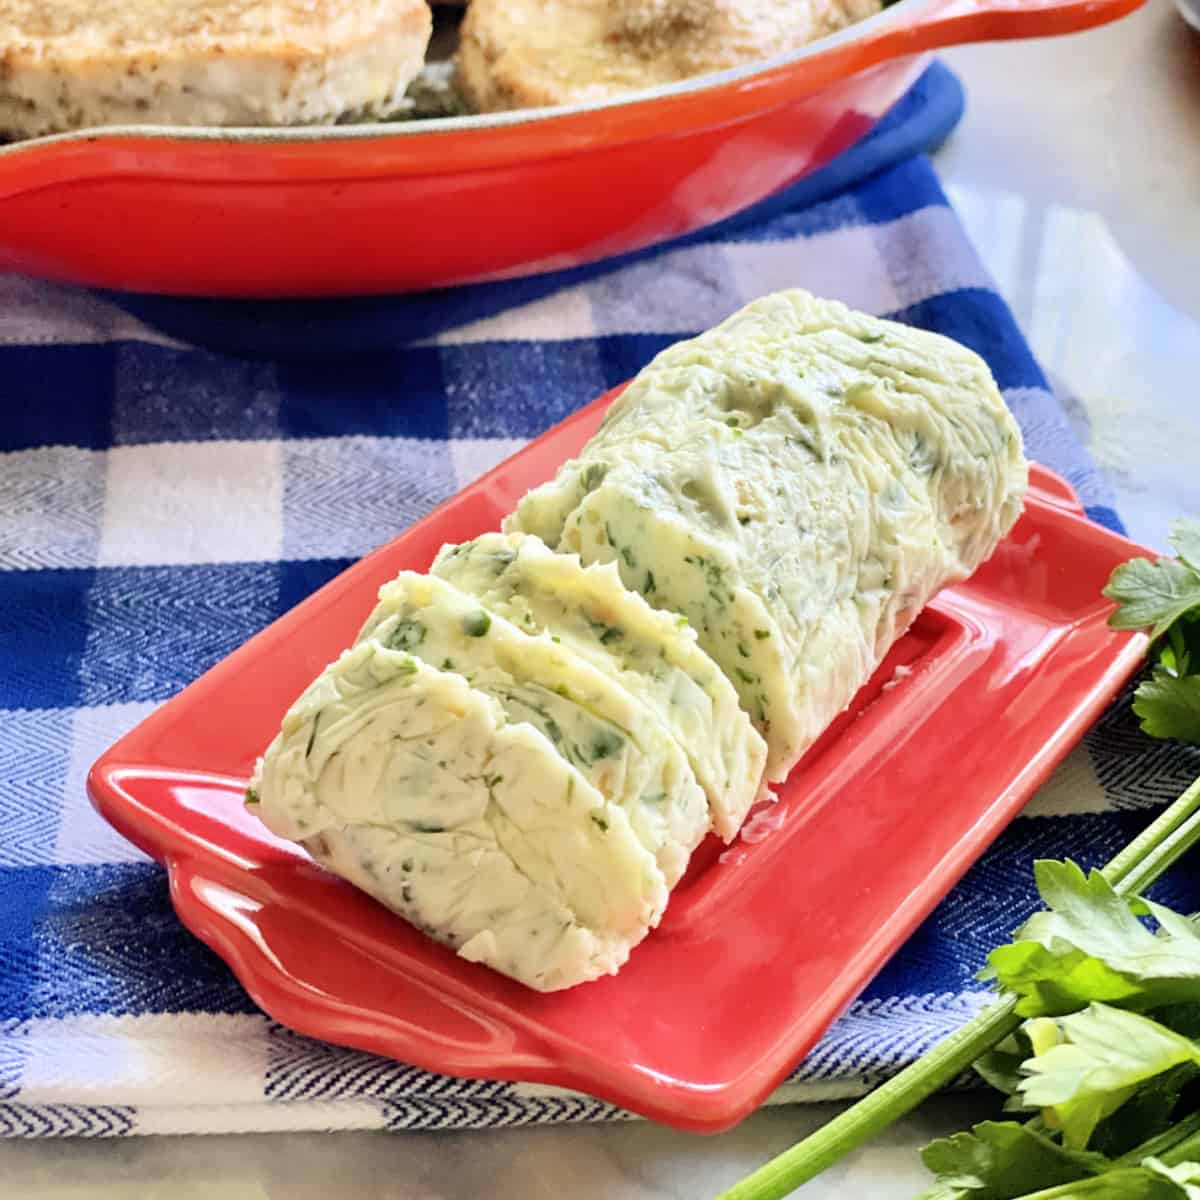 https://www.katiescucina.com/wp-content/uploads/2021/08/Garlic-Herb-Butter-for-Steak.jpg